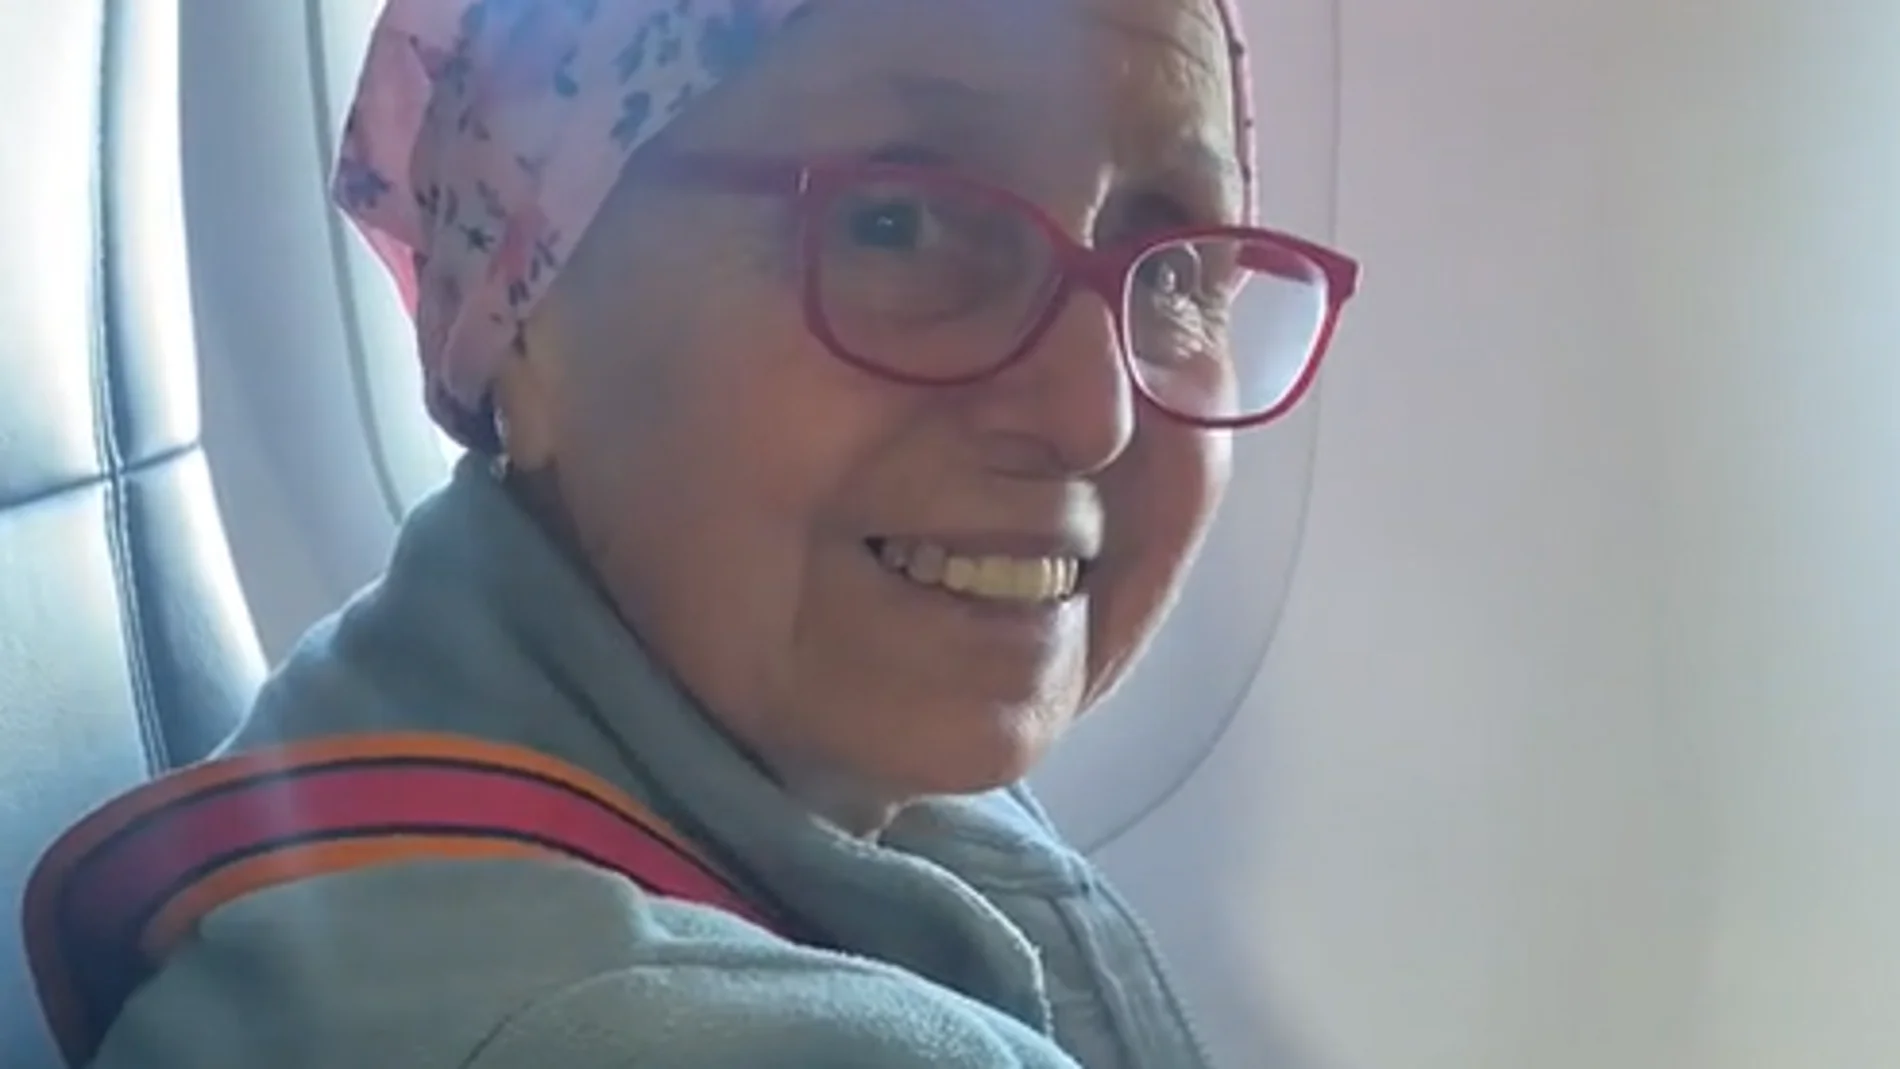 Un piloto sorprende a una pasajera por su valiente lucha contra el cáncer